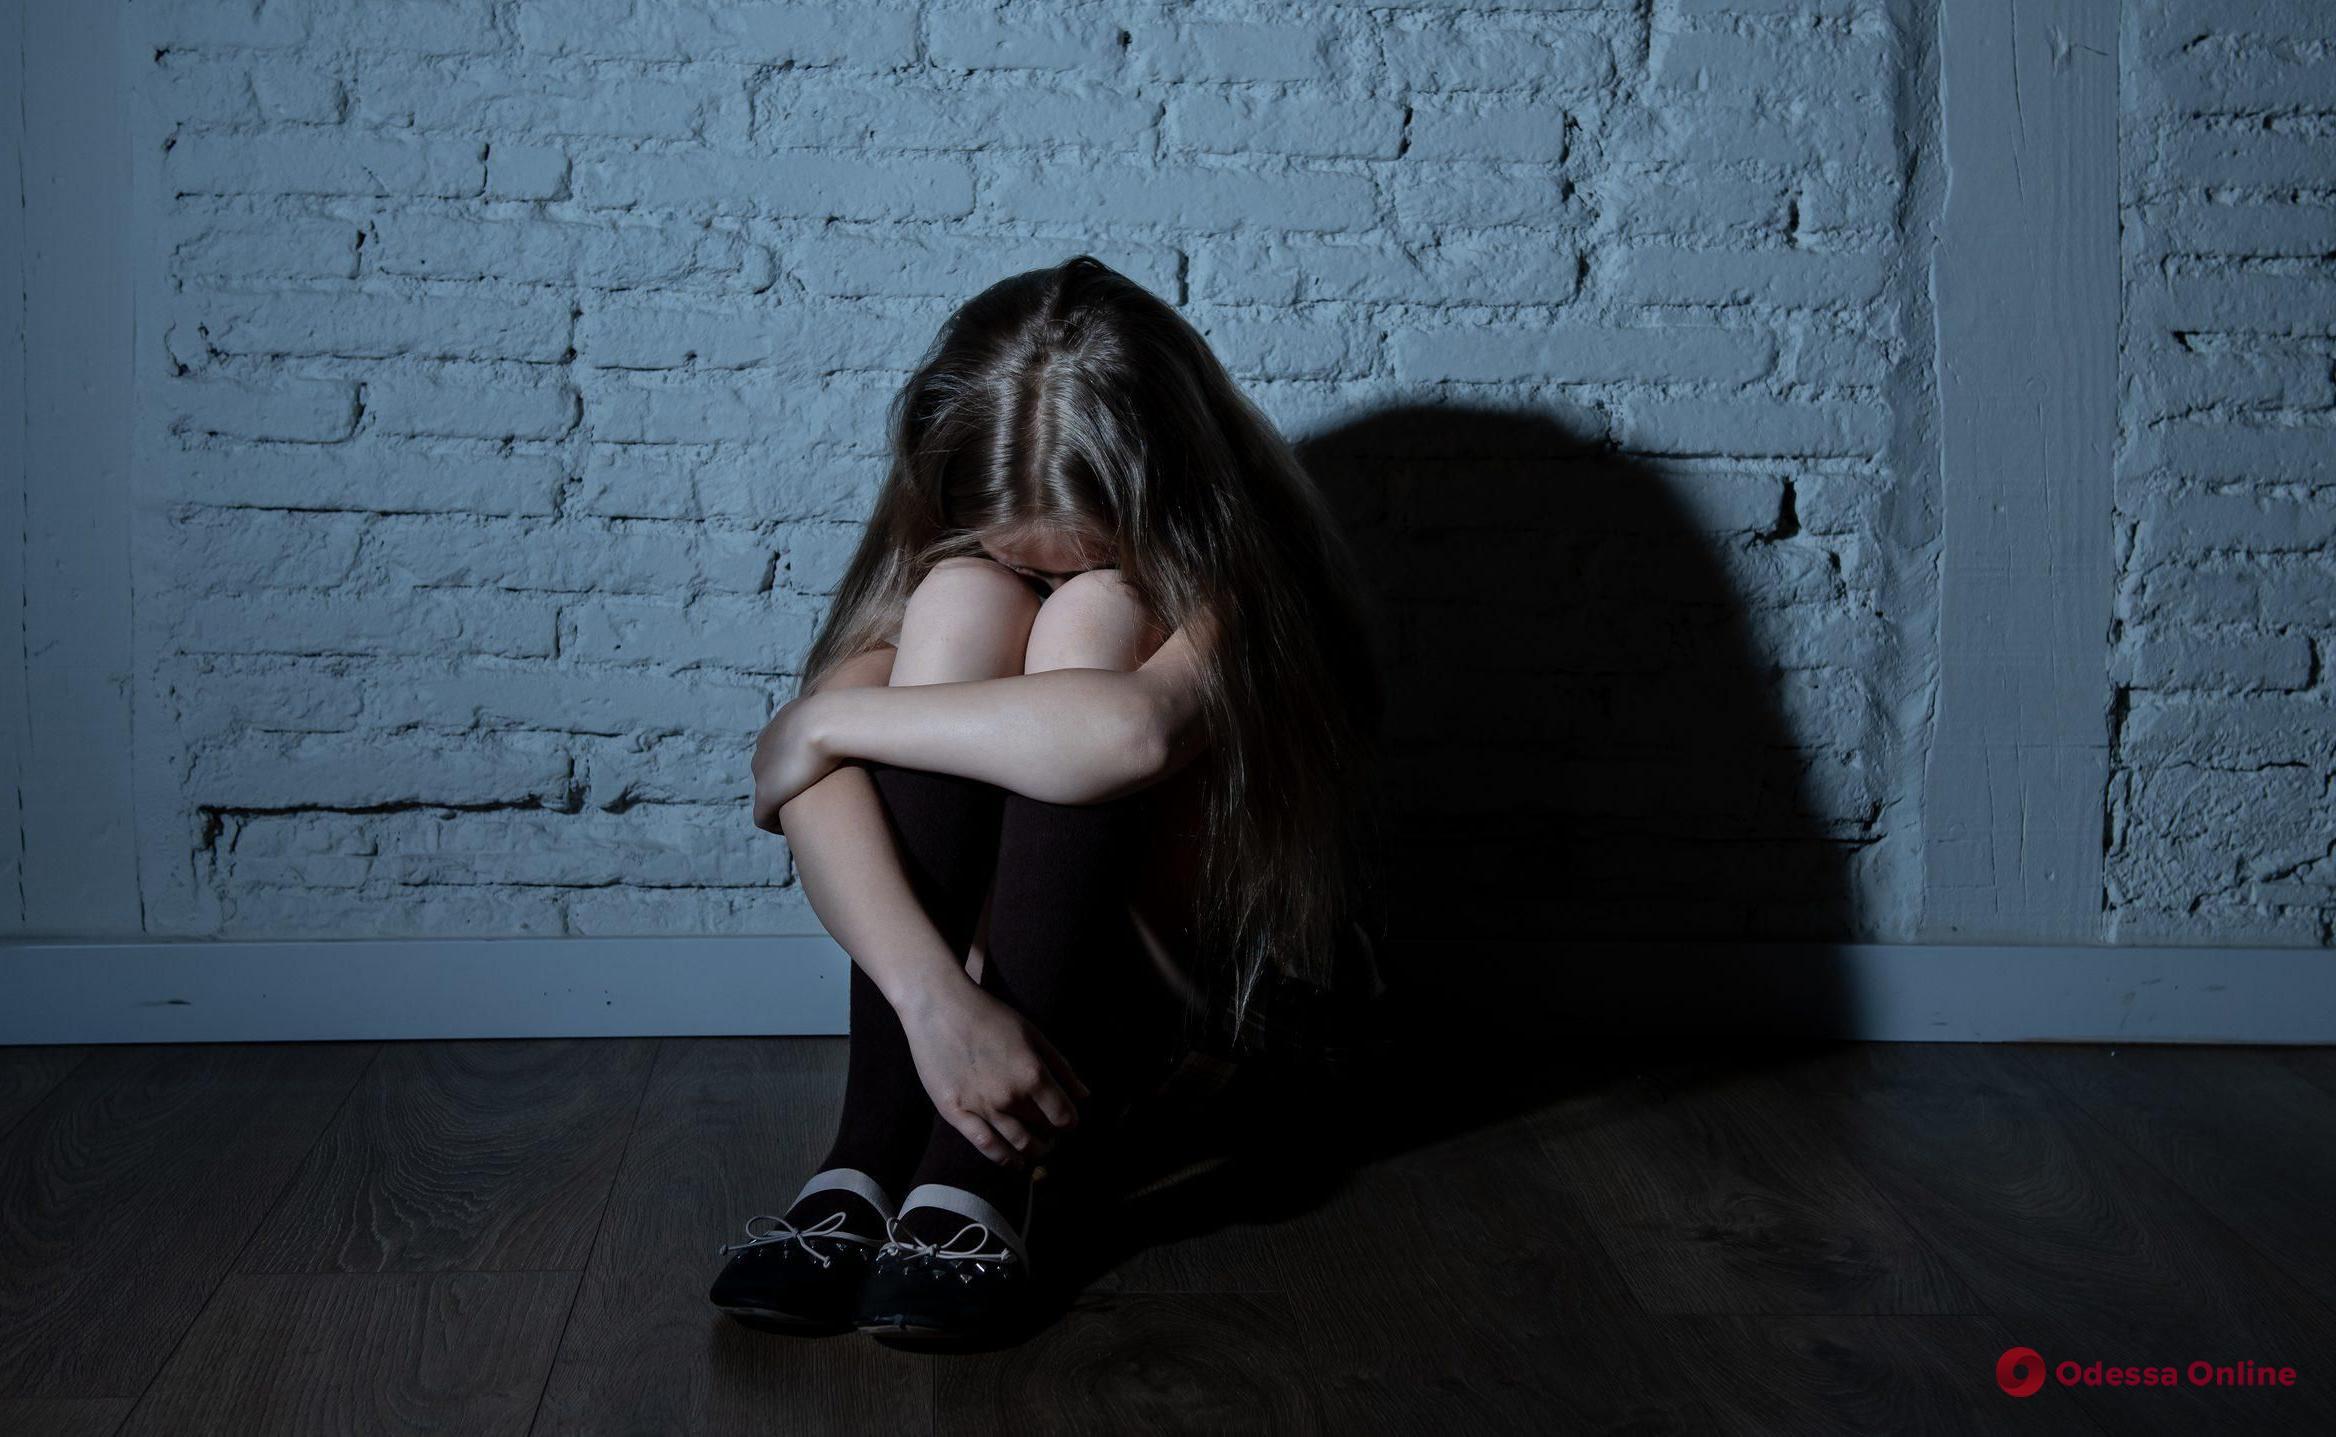 Зверское изнасилование 13-летней школьницы: один из насильников сел на 11 лет, второй ожидает приговора